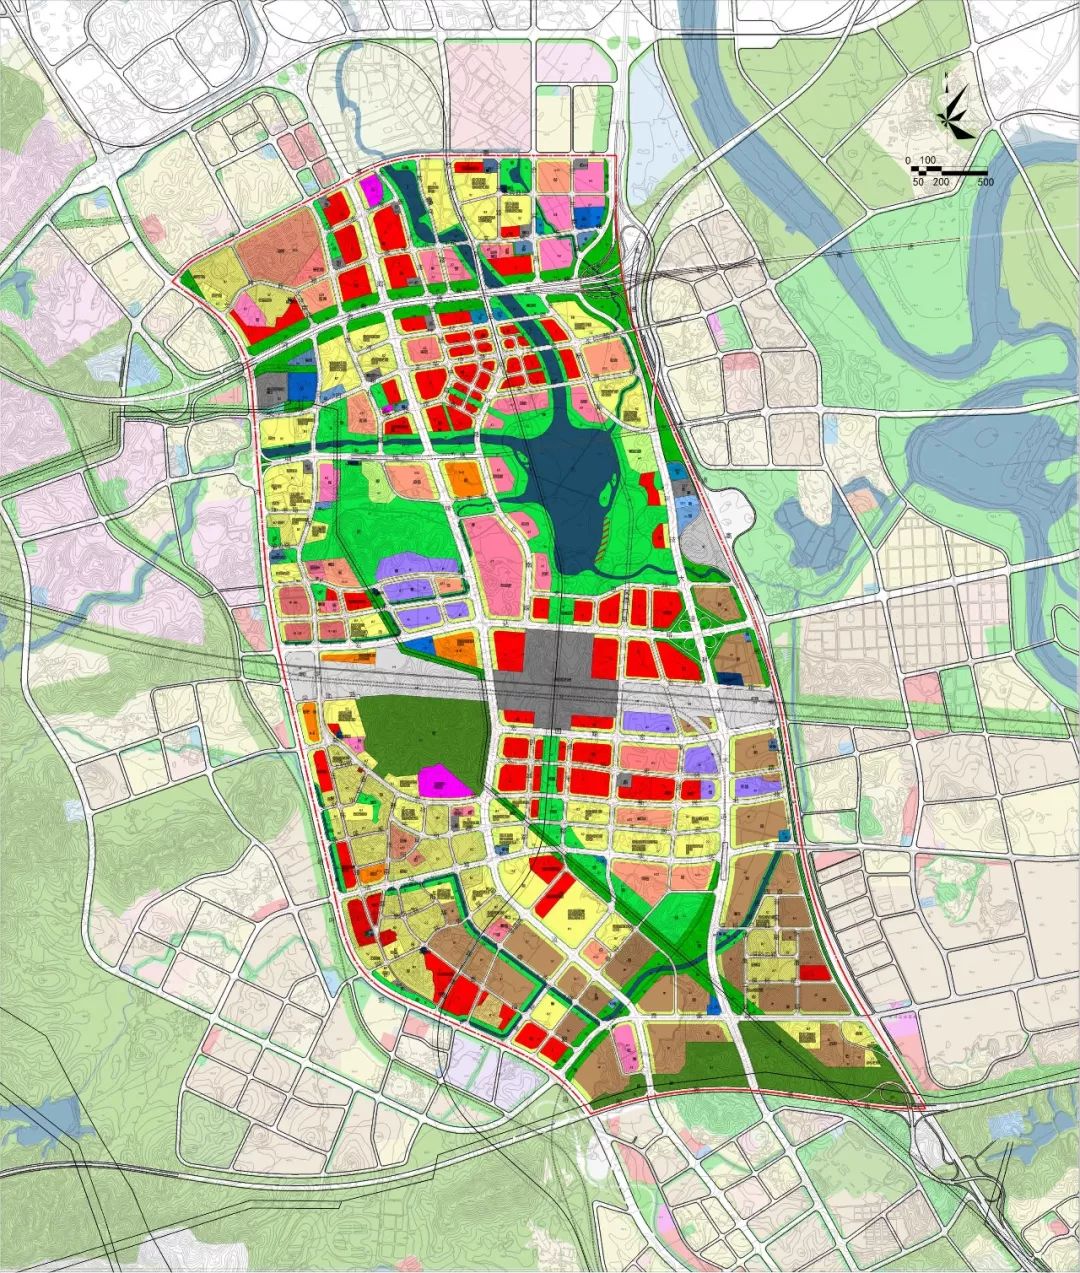 惠州旧城改造规划图图片